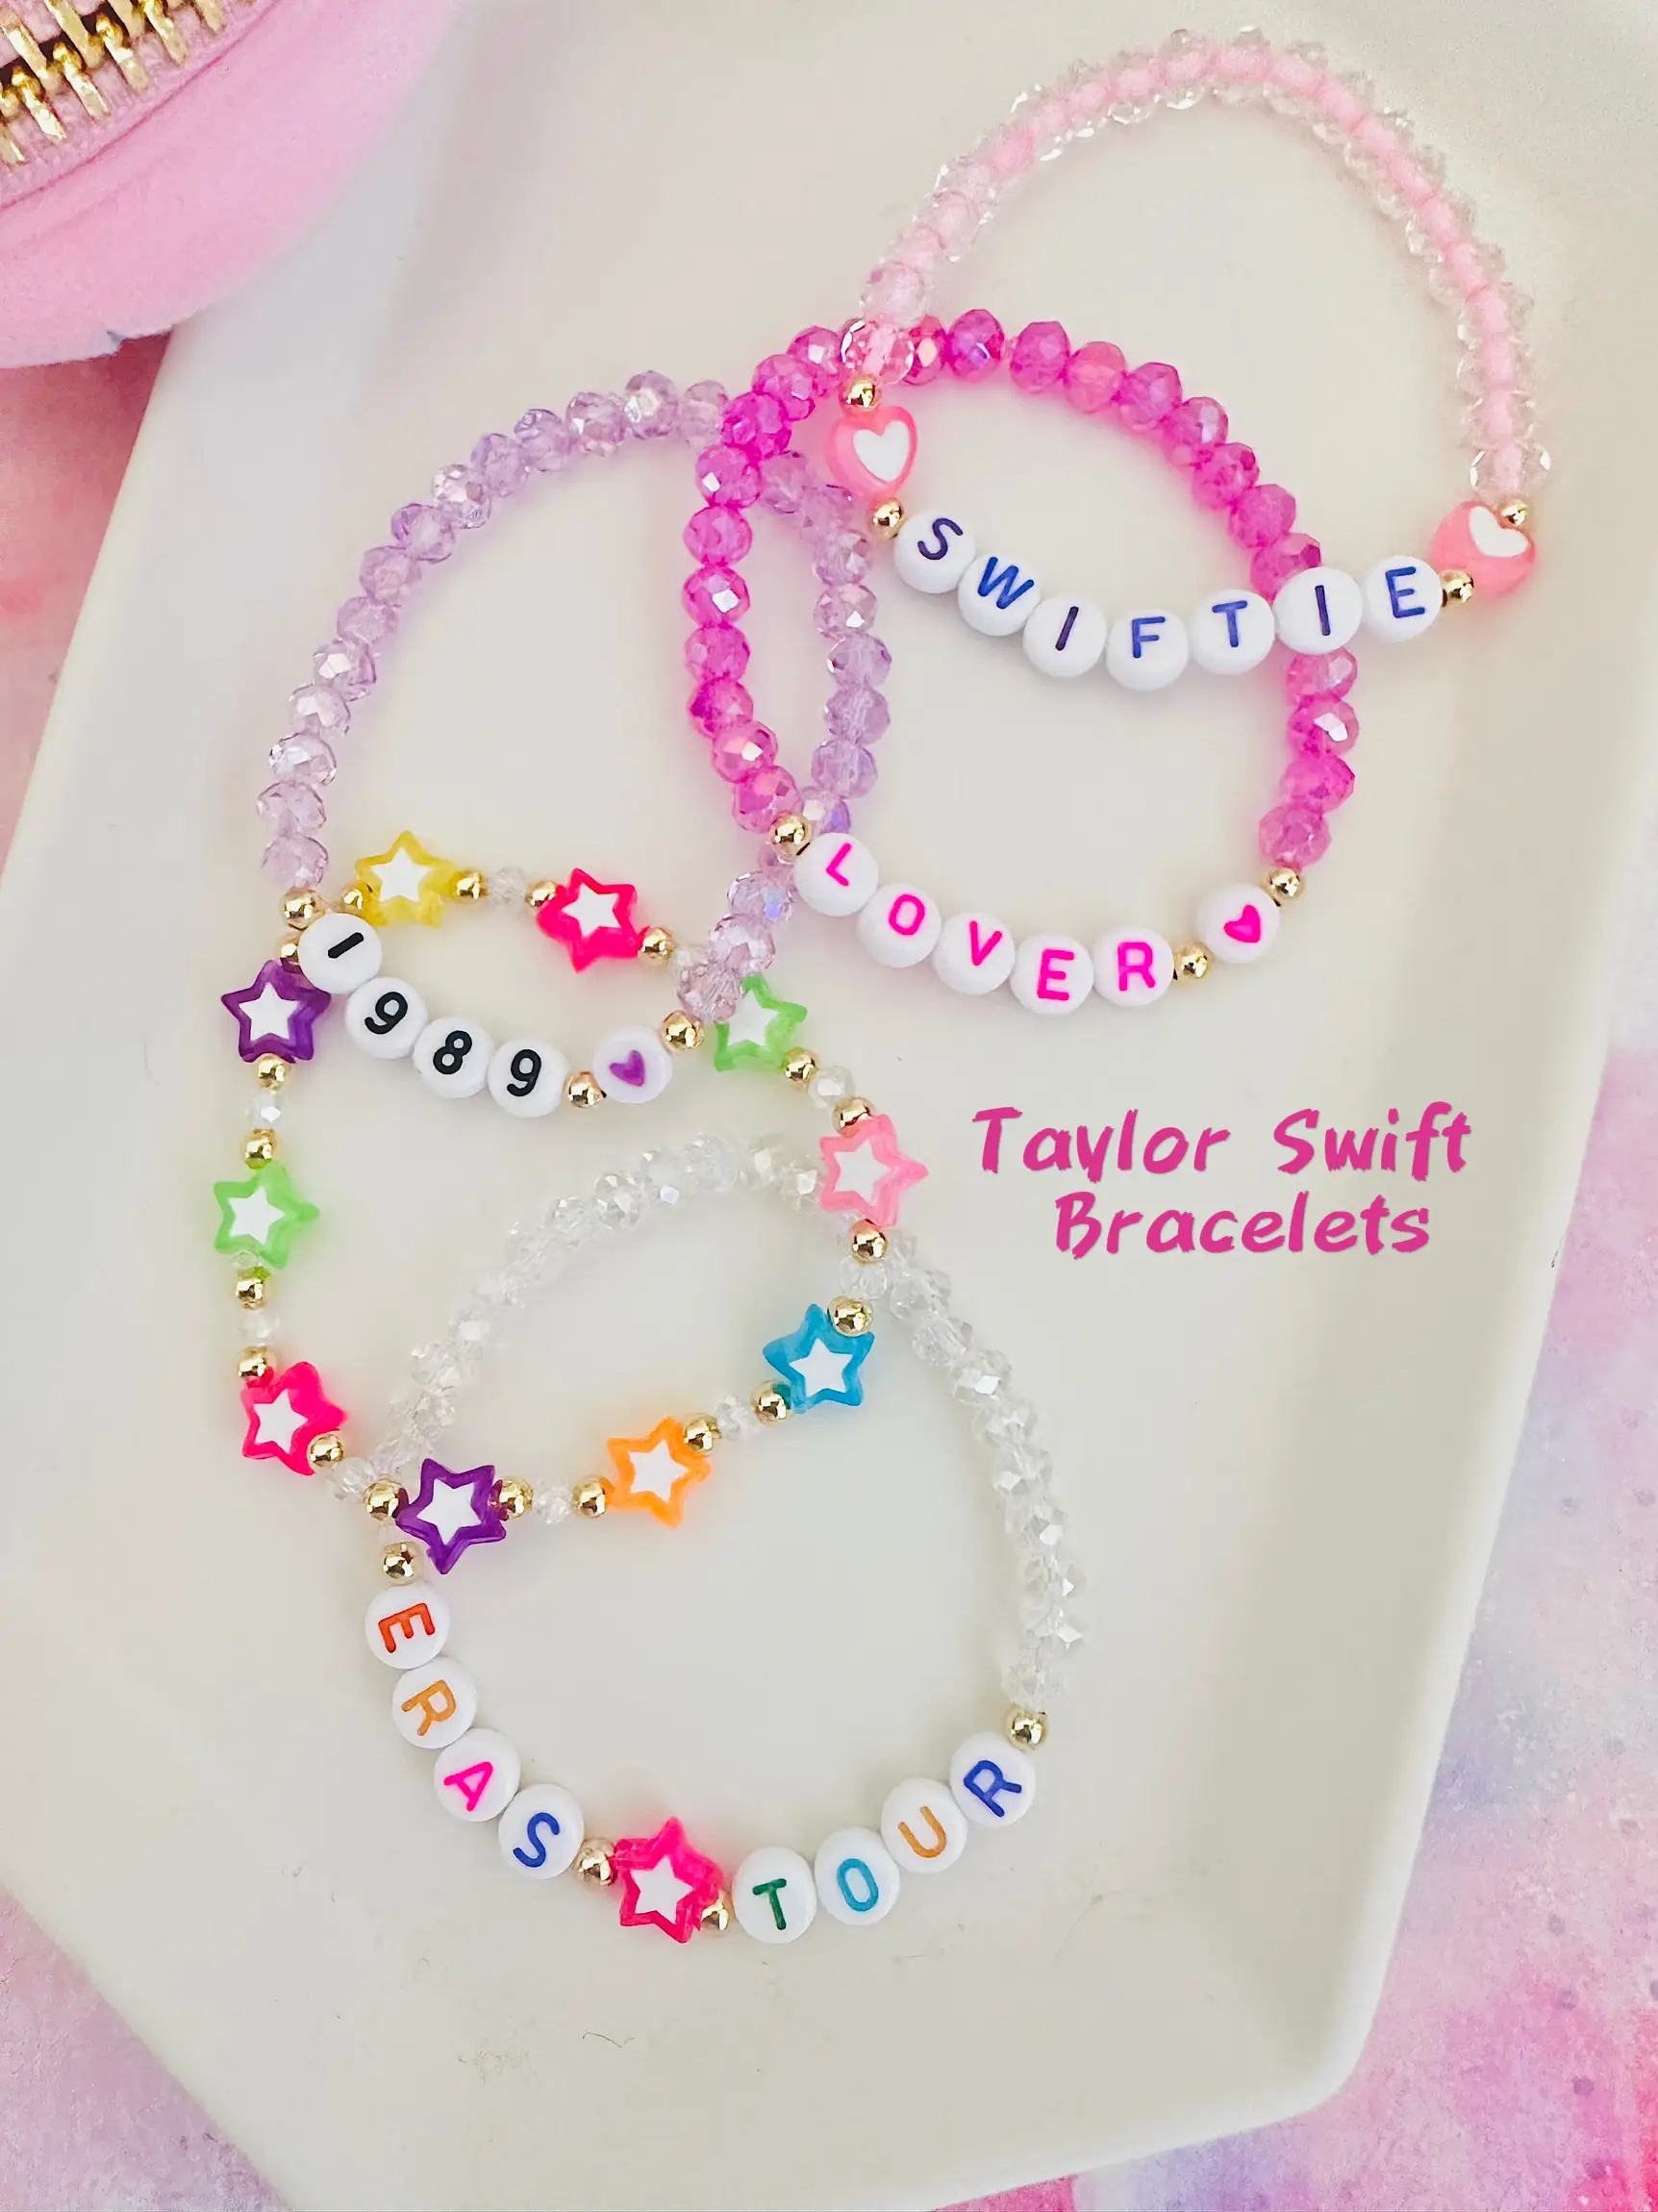 Taylor Swift Letter Bead Bracelets For Concert: Get Your Taylor